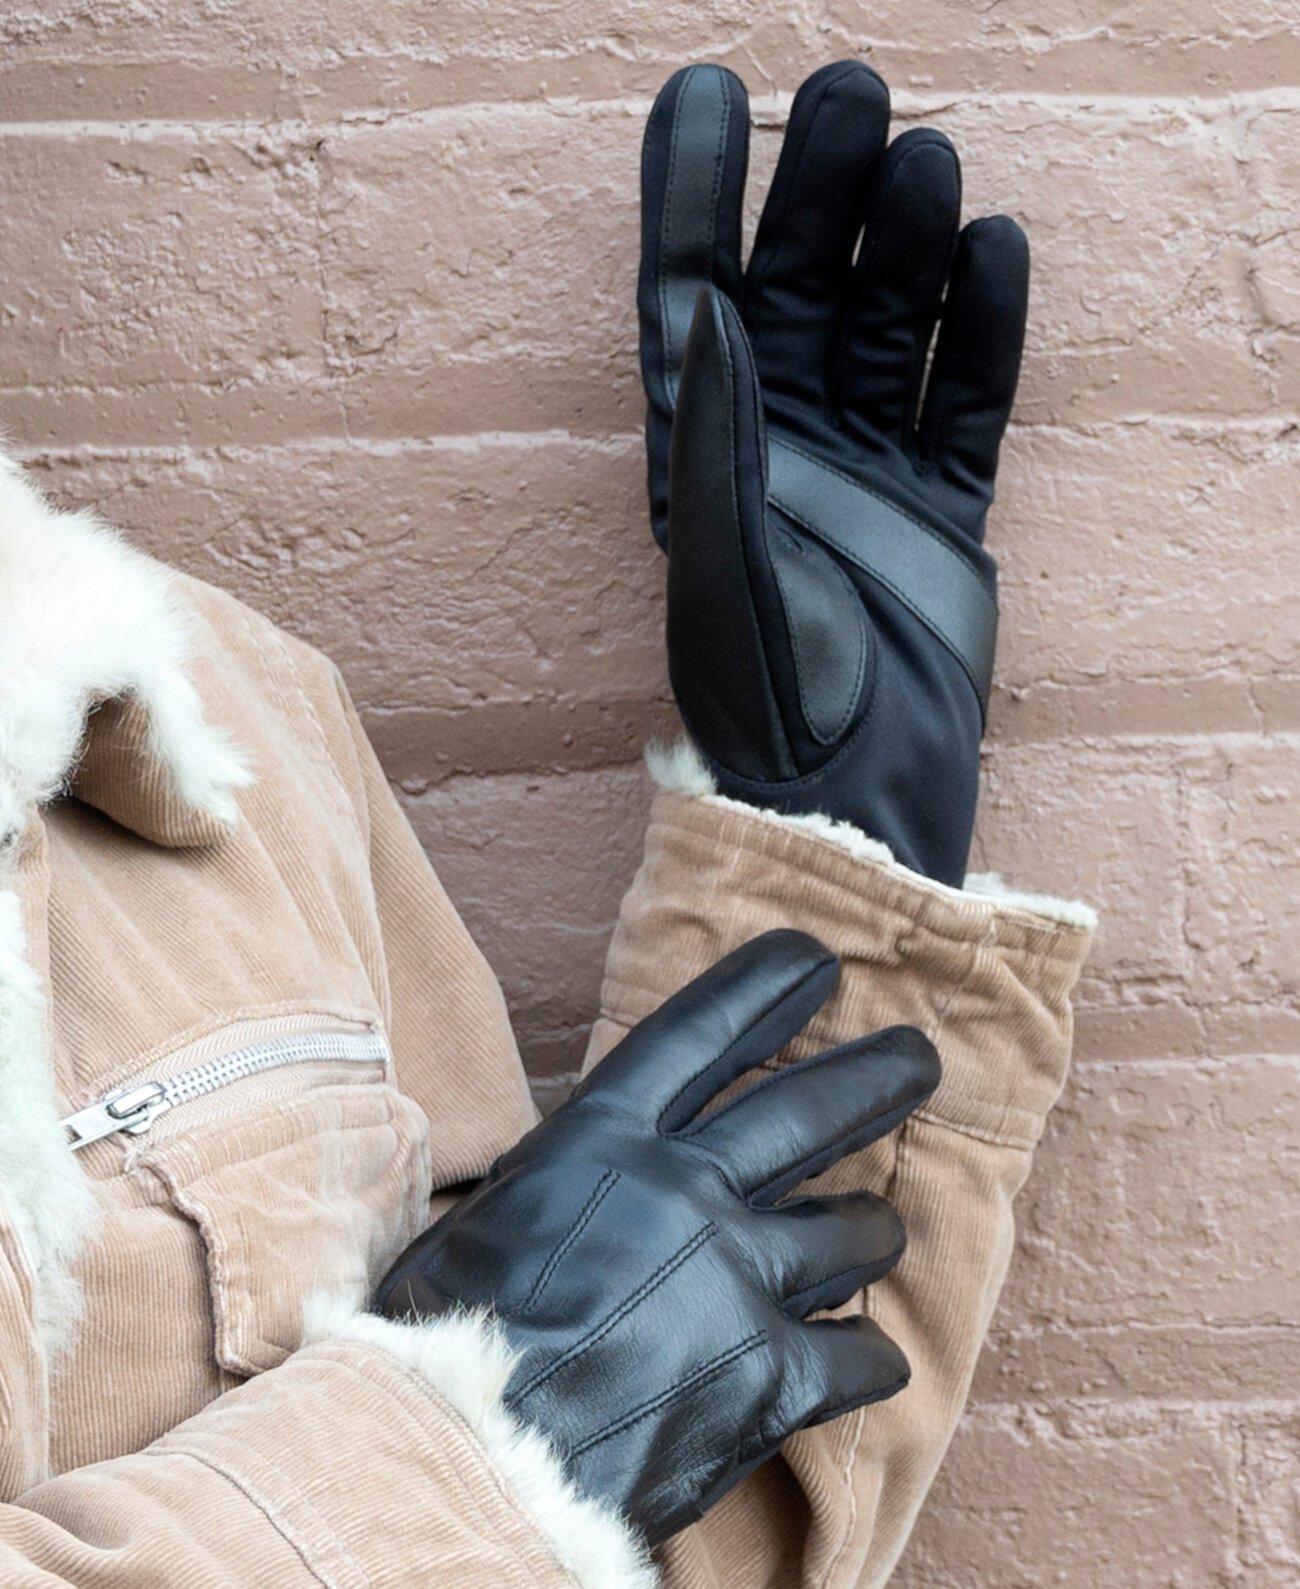 Женские перчатки из эластичной кожи для сенсорного экрана ISOTONER